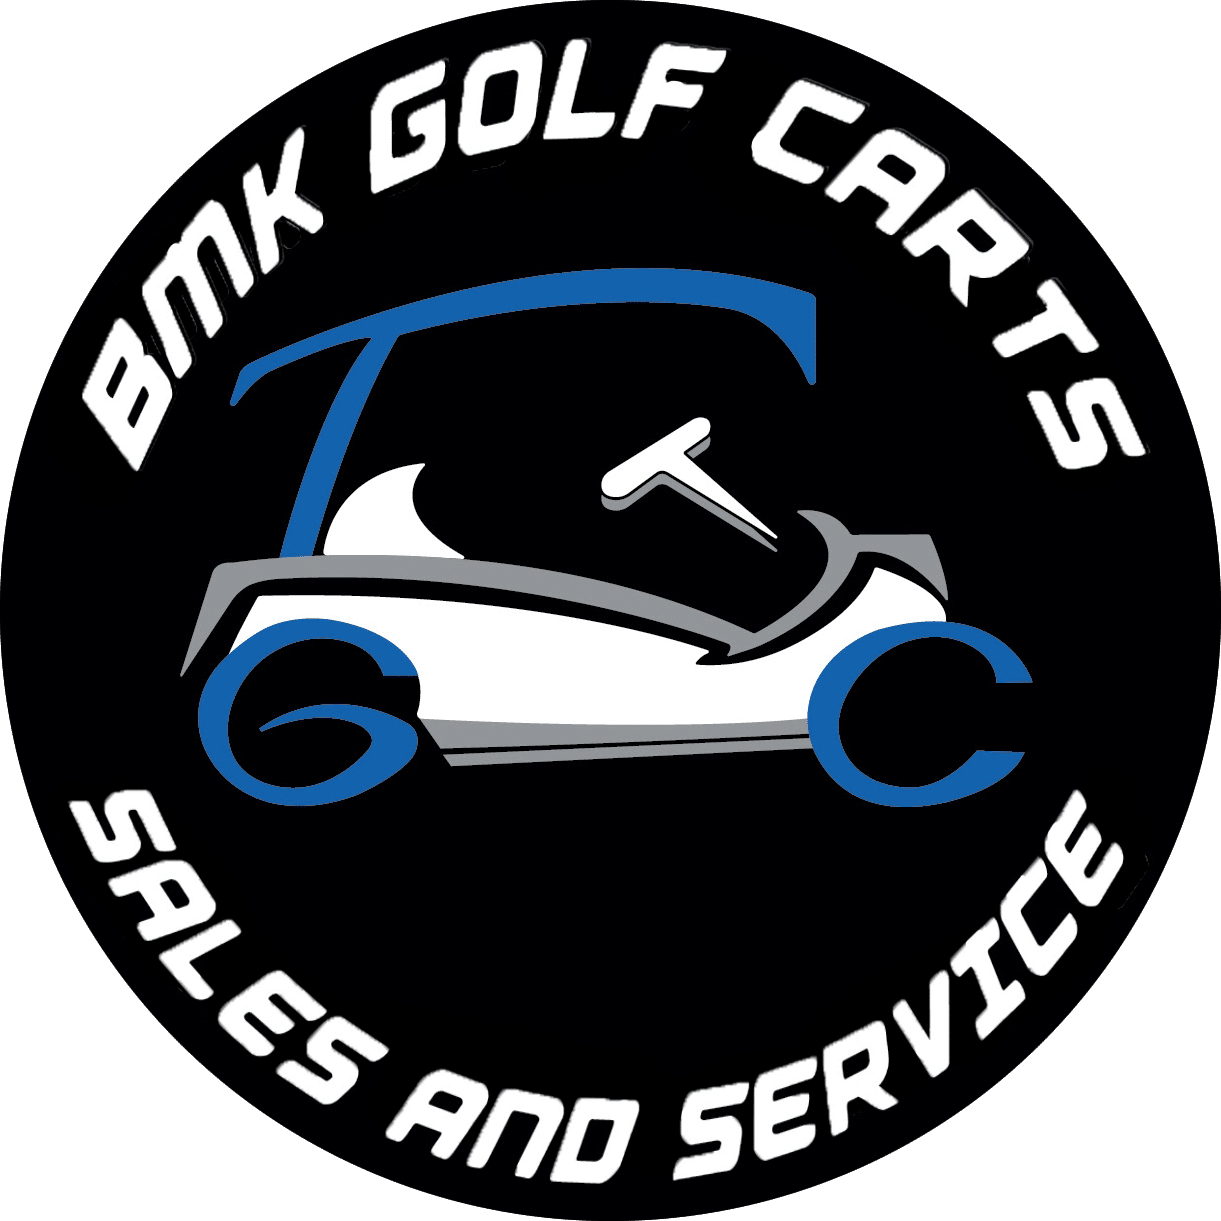 BMK Golf Carts